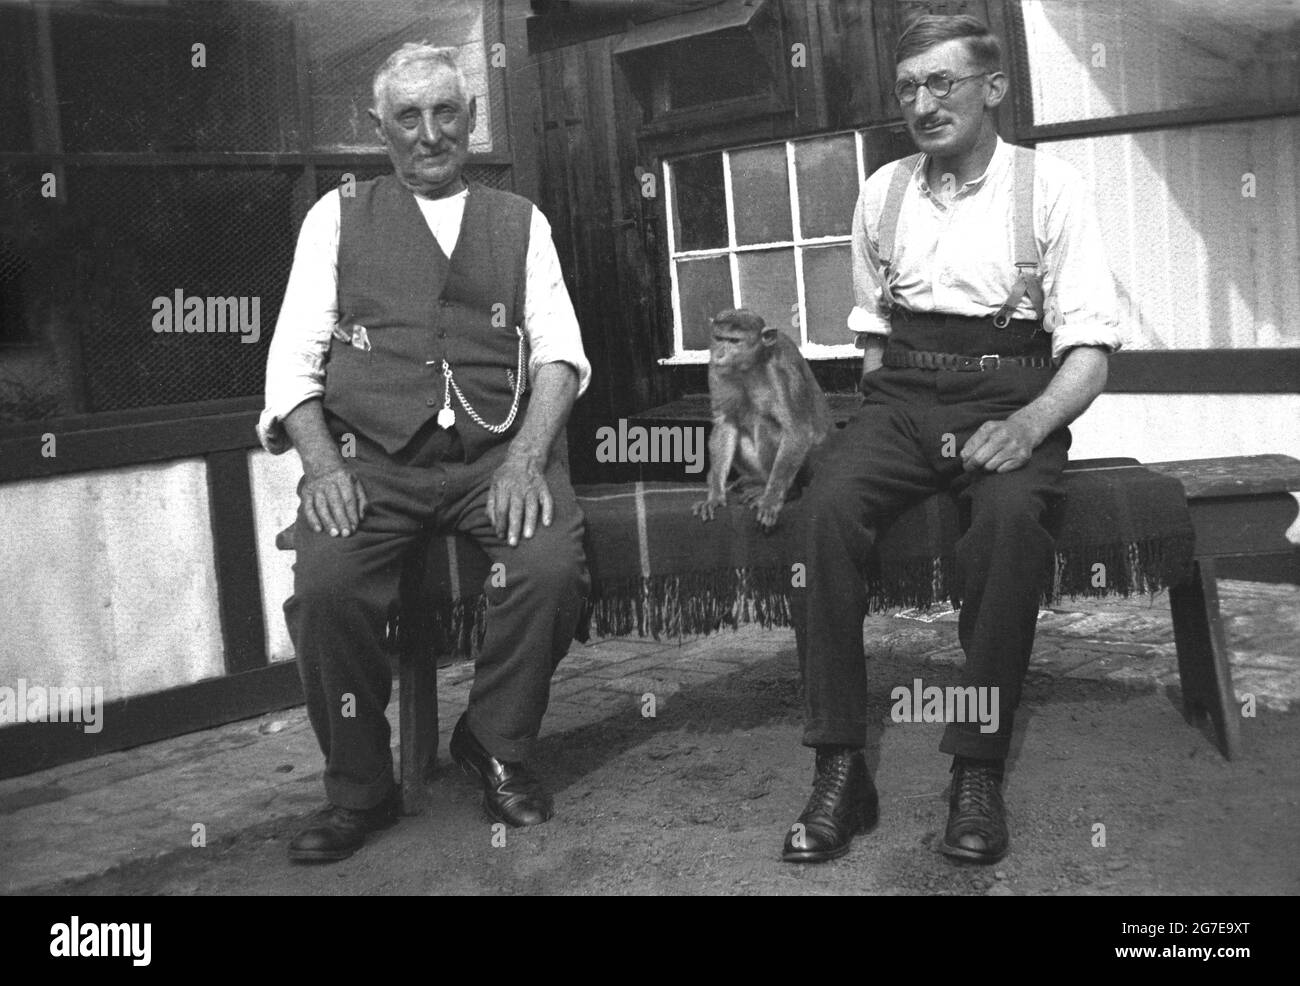 Anni '30, storici, due operai, forse contadini, nel tradizionale abito  maschile dell'epoca, uno indossando bretelle, l'uomo anziano indossando un  gilet con un orologio tascabile su una catena, seduto fuori su un tappeto